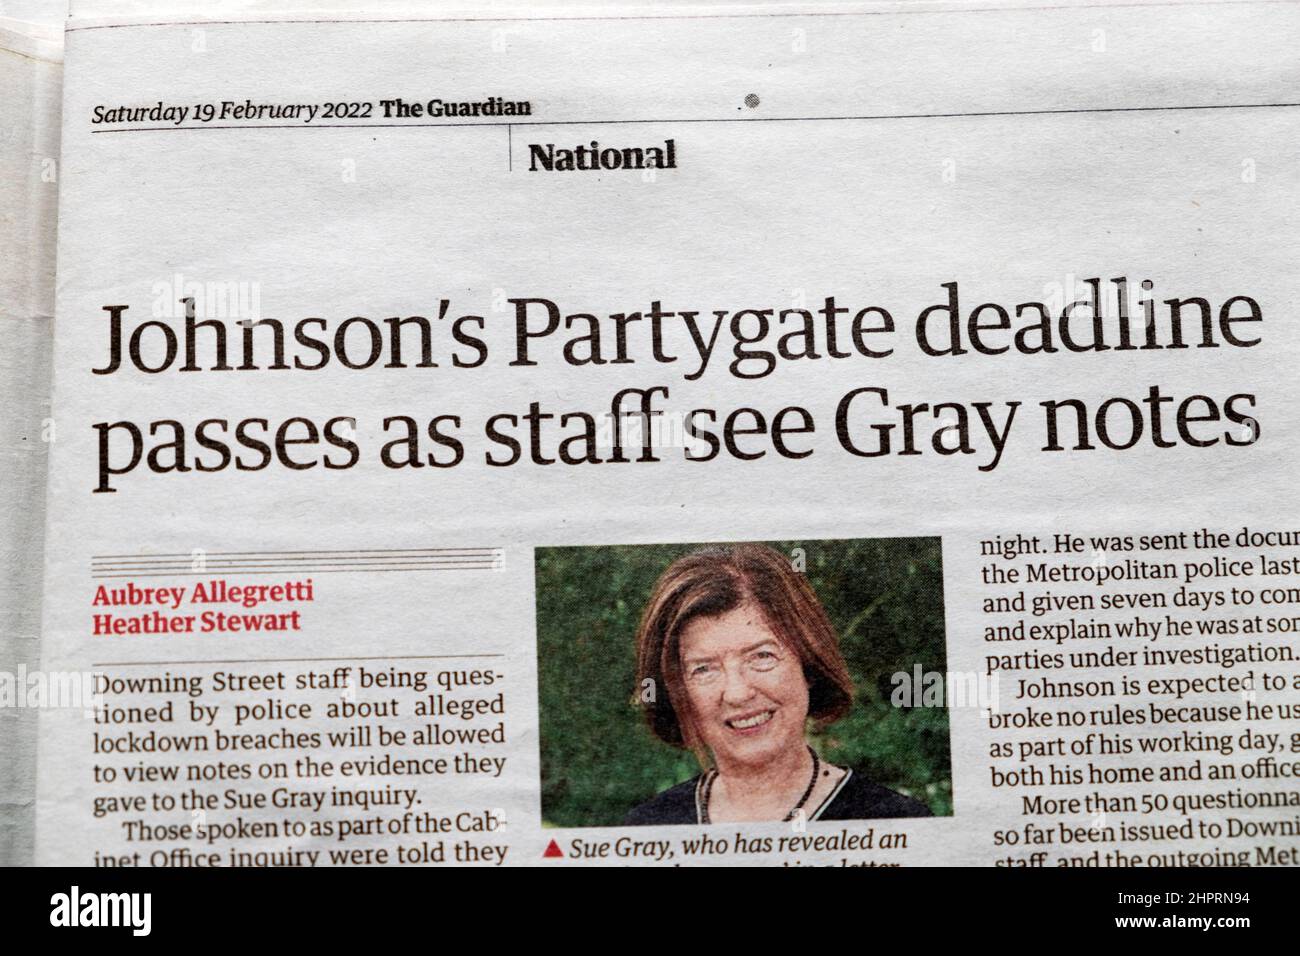 Boris 'Johnson's Partygate Deadline passa come staff vedere Grey Notes' Guardian giornale di taglio articolo di taglio del taglio il 19 febbraio 2022 Regno Unito Foto Stock